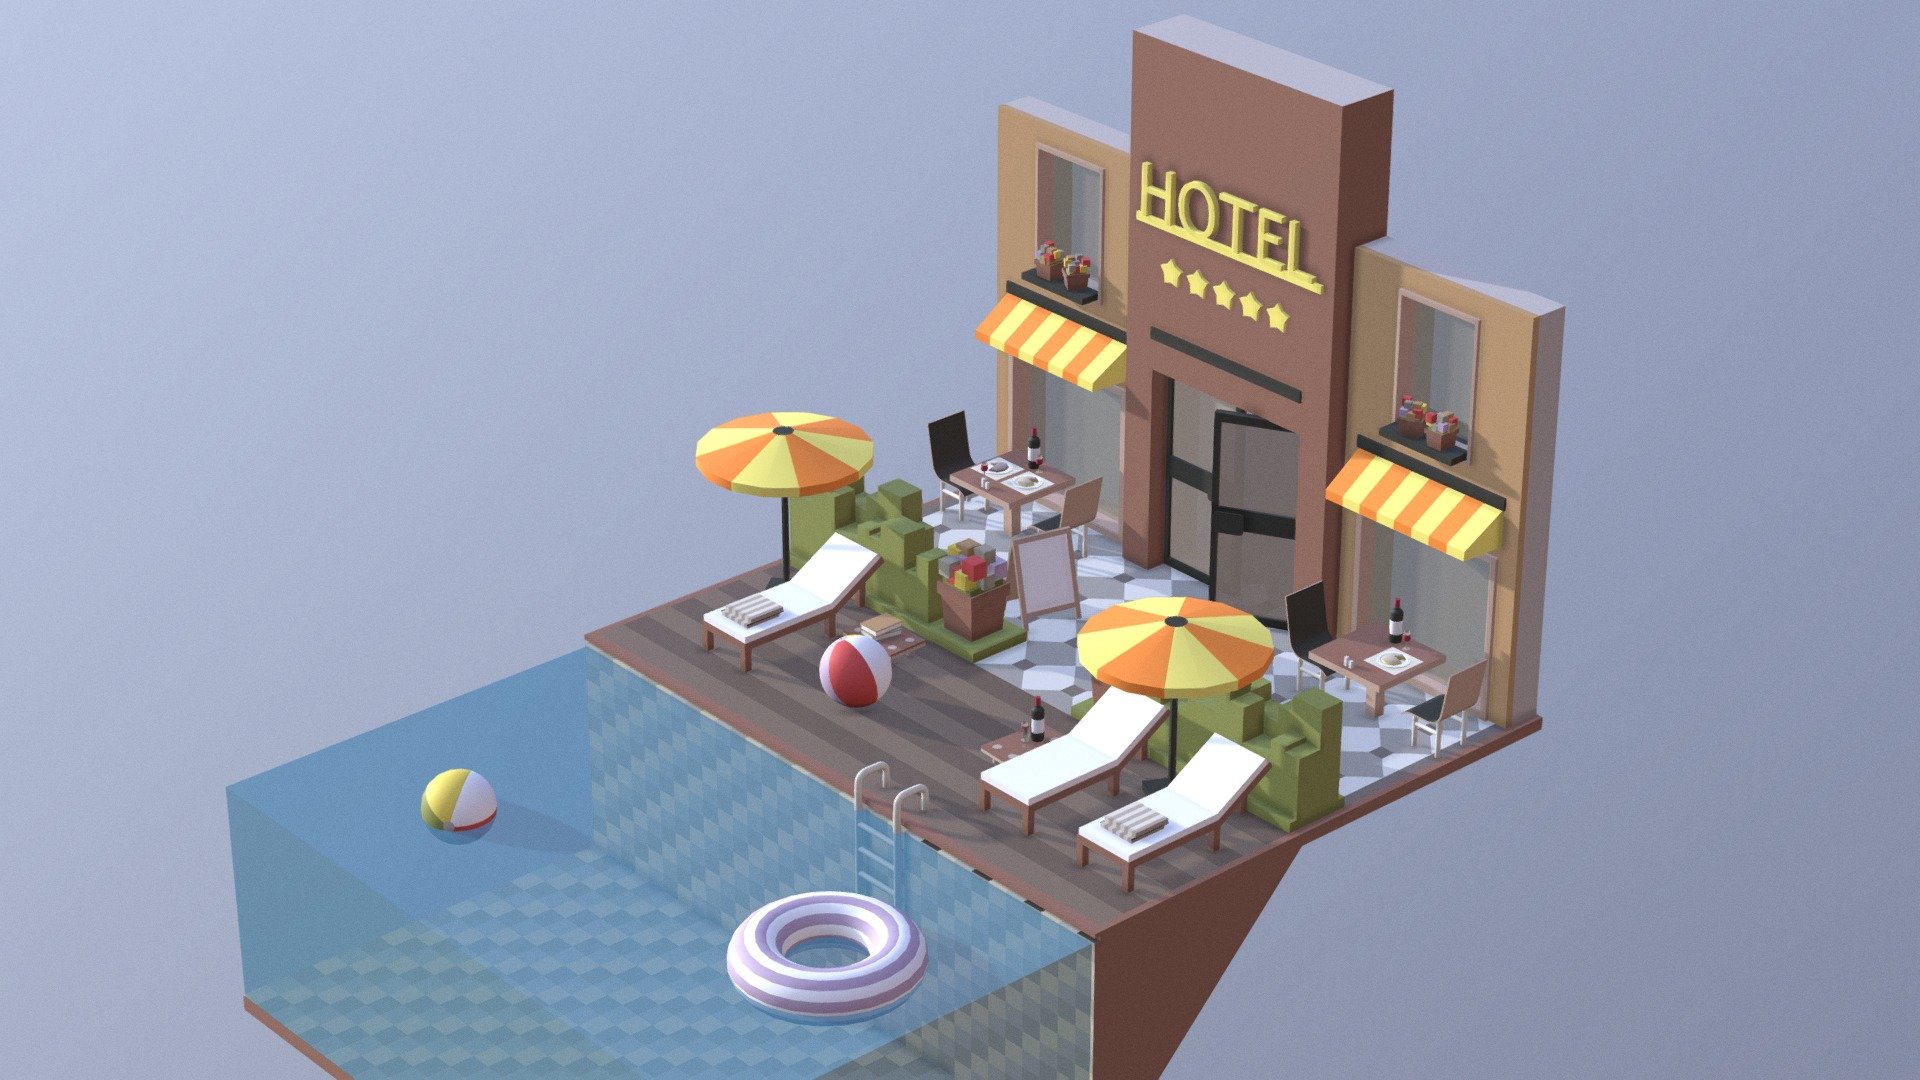 Hotel - 3D model by KattyLi 3d model